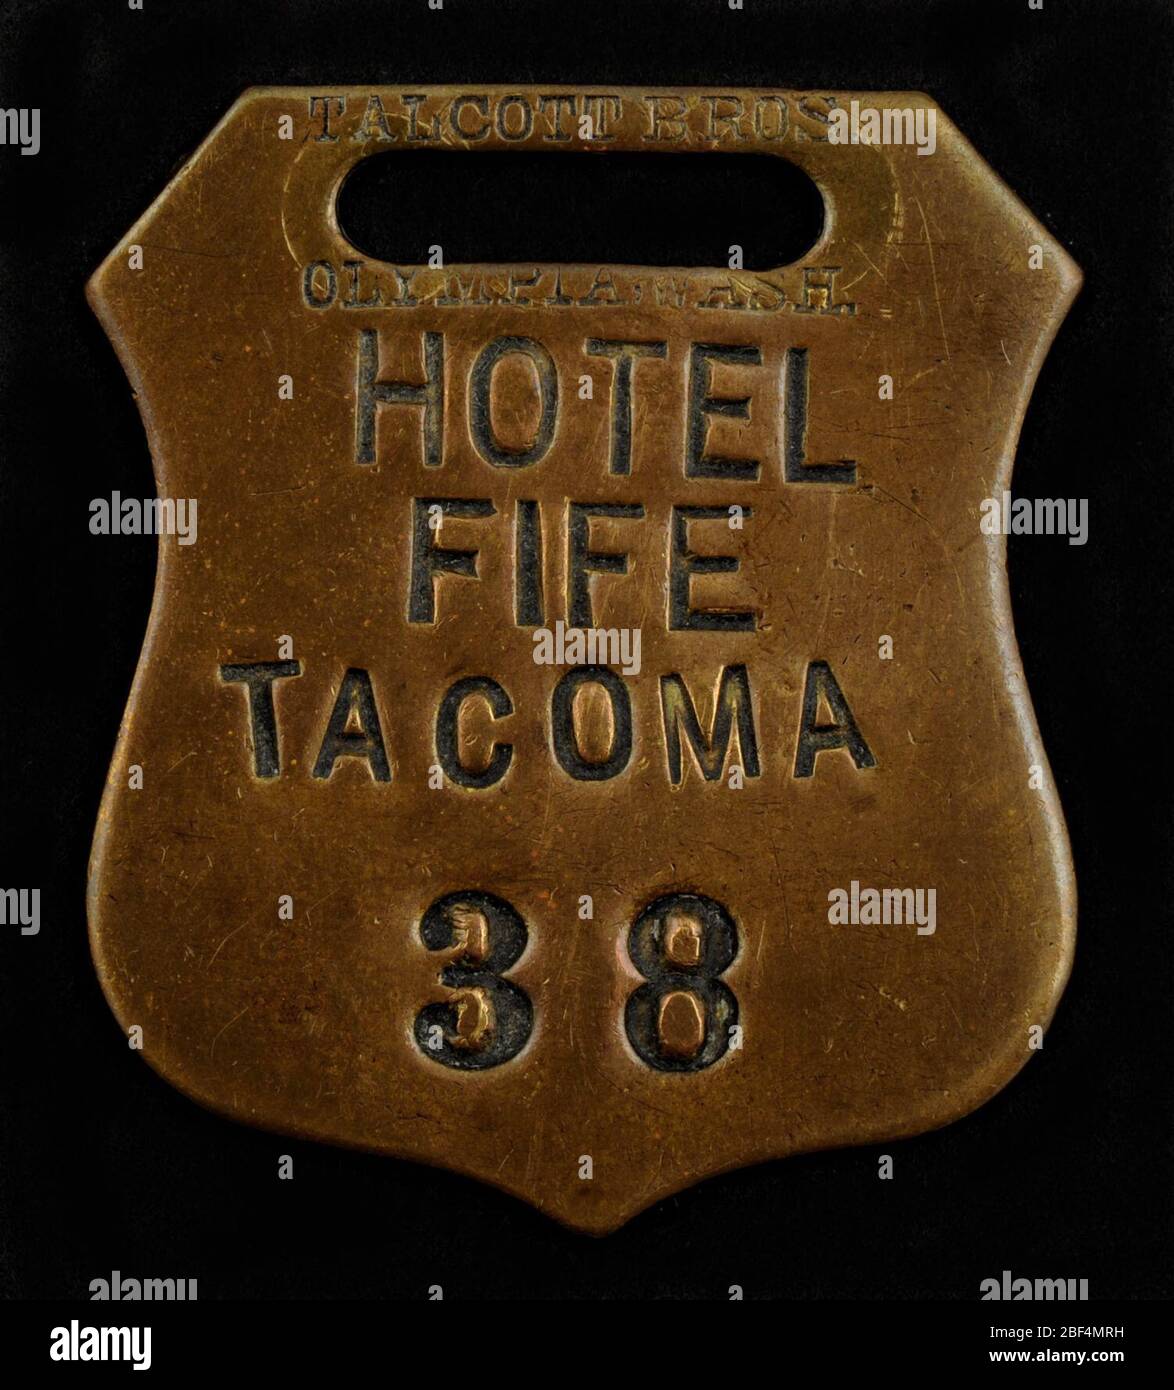 Hotel Fife Owney TAG. Owney recibió esta etiqueta de cheque de hotel del Hotel Fife en Tacoma, Washington. El hotel de cinco pisos, construido en 1888, se encuentra en la esquina noroeste de la 9ª y el Pacífico y fue derribado en 1925. William H. Fife, el propietario del hotel, nació en Ontario, Canadá. Foto de stock